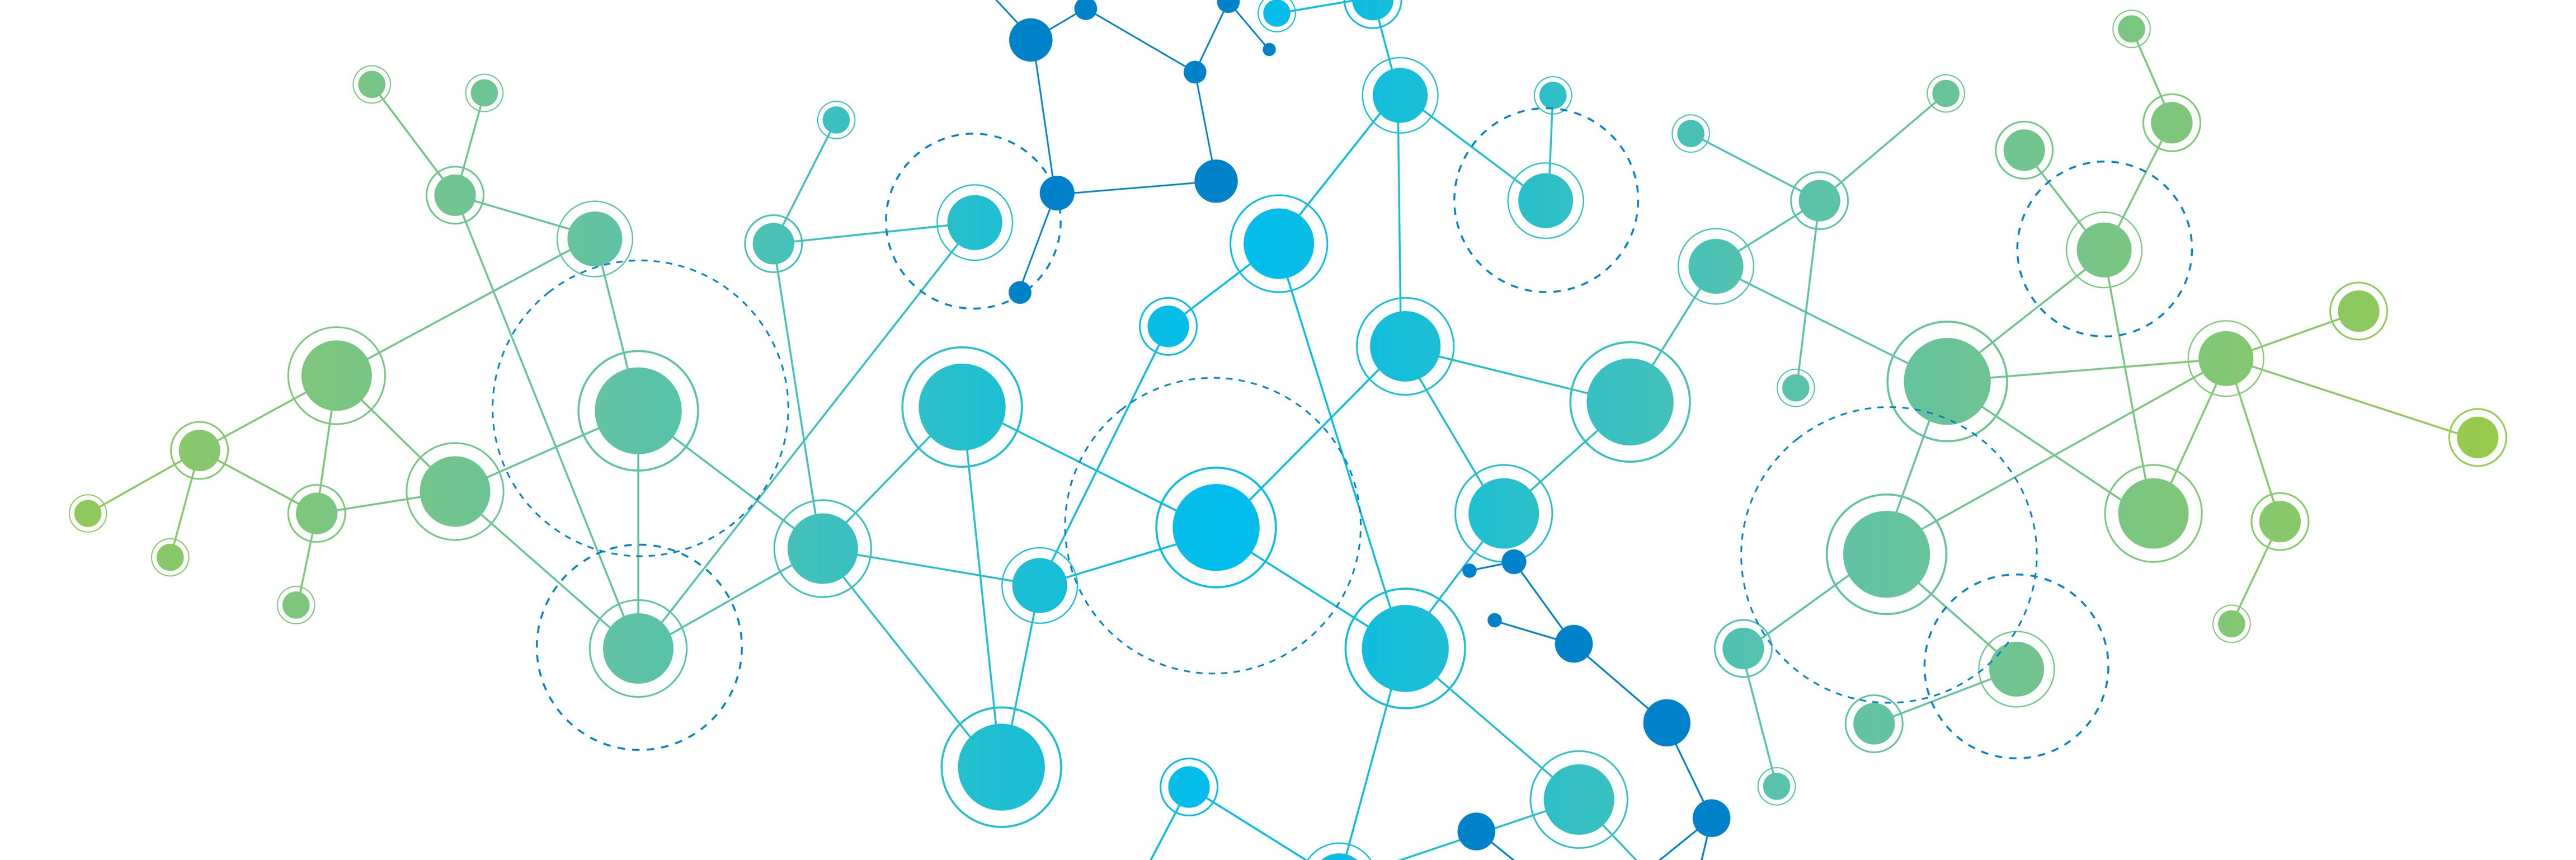 Graphik: Netzwerk aus blau-grünen Punkten und Linien.
